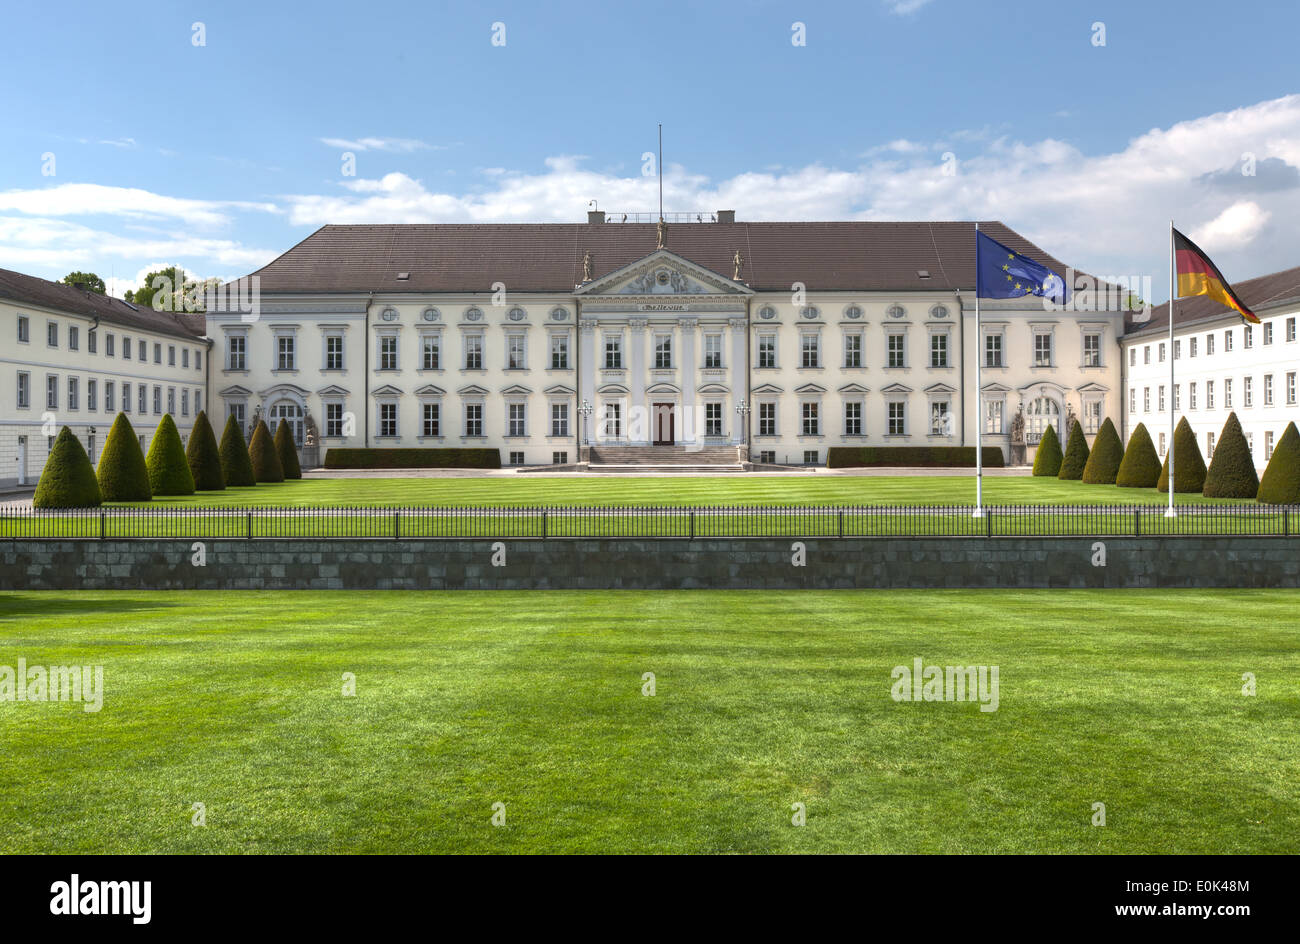 Le château de Bellevue, la résidence officielle du Président de l'Allemagne, à Berlin. Banque D'Images